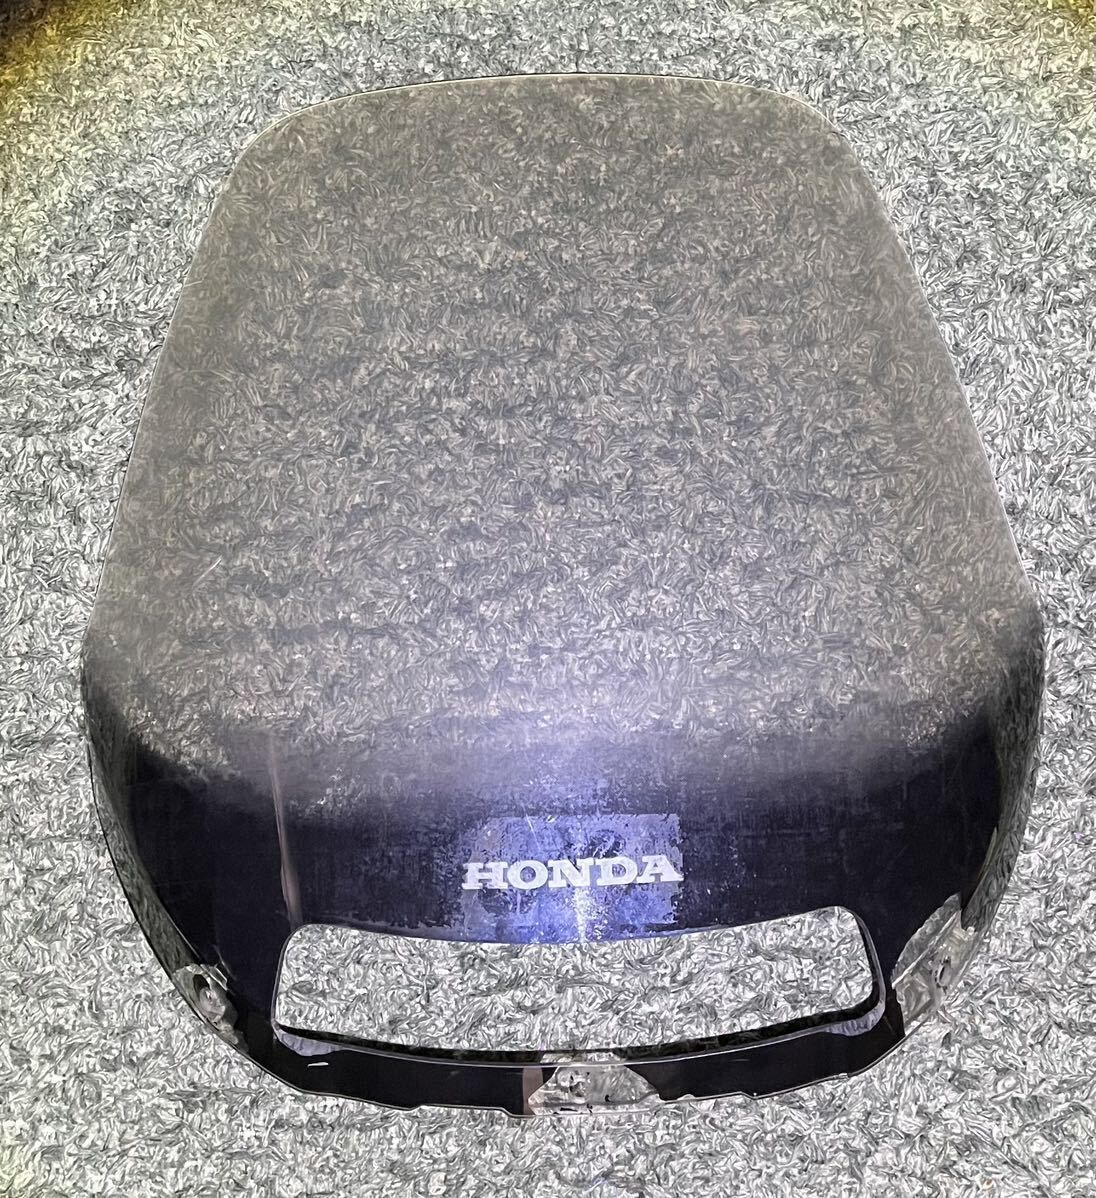 HONDA ホンダ パシフィックコースト PC800 ウインドスクリーン 純正サイズとアメリカホンダ オプション ロングスクリーン 中古の画像4